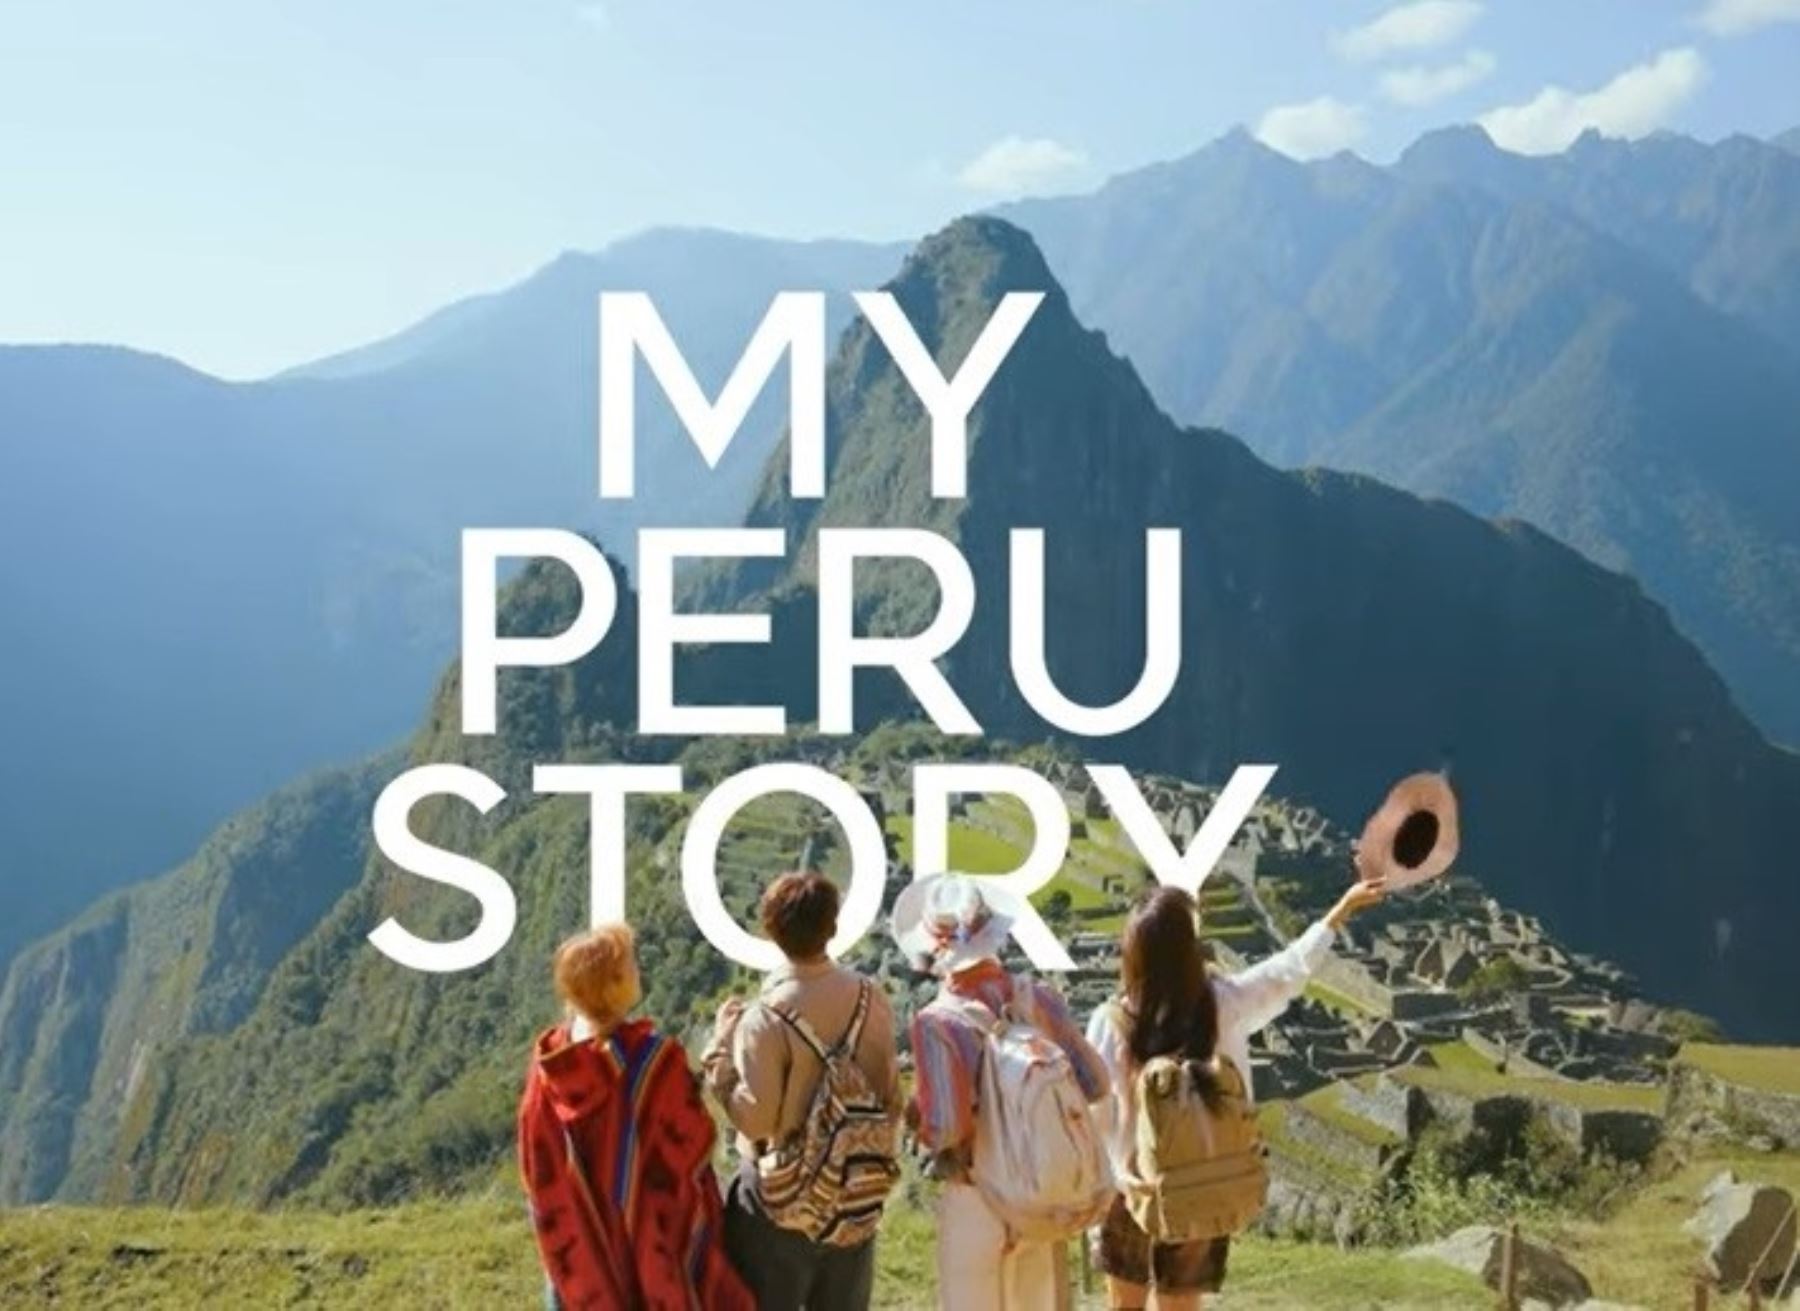 Imágenes de Machu Picchu, nuestro emblema turístico, forma parte de la campaña promocional que lanzó Promperú en Corea del Sur para captar más turistas de ese país asiático.